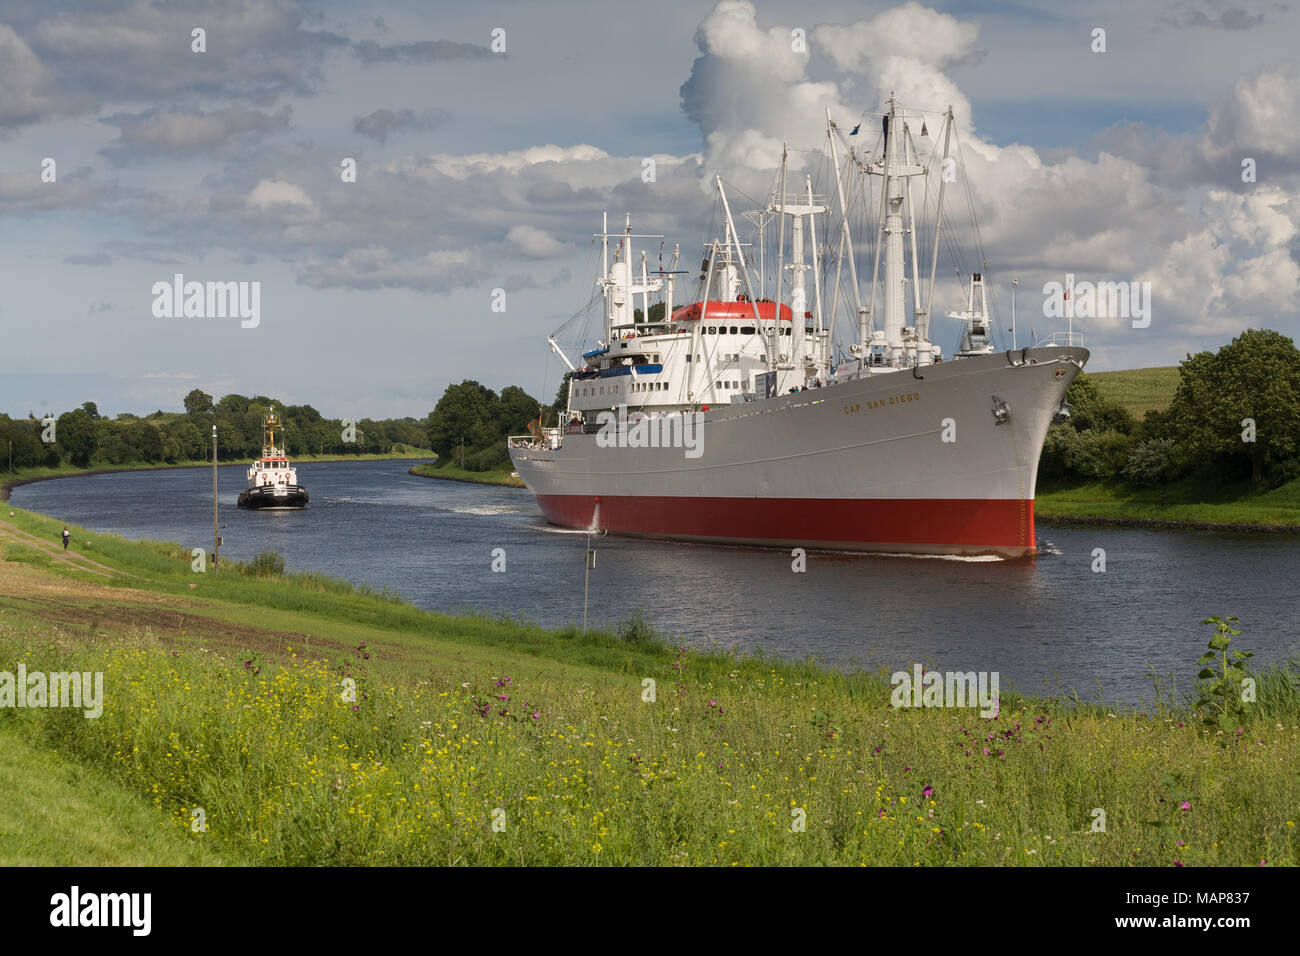 Kiel, Germany, Cap Cappuccino ship on the Kiel Canal Stock Photo